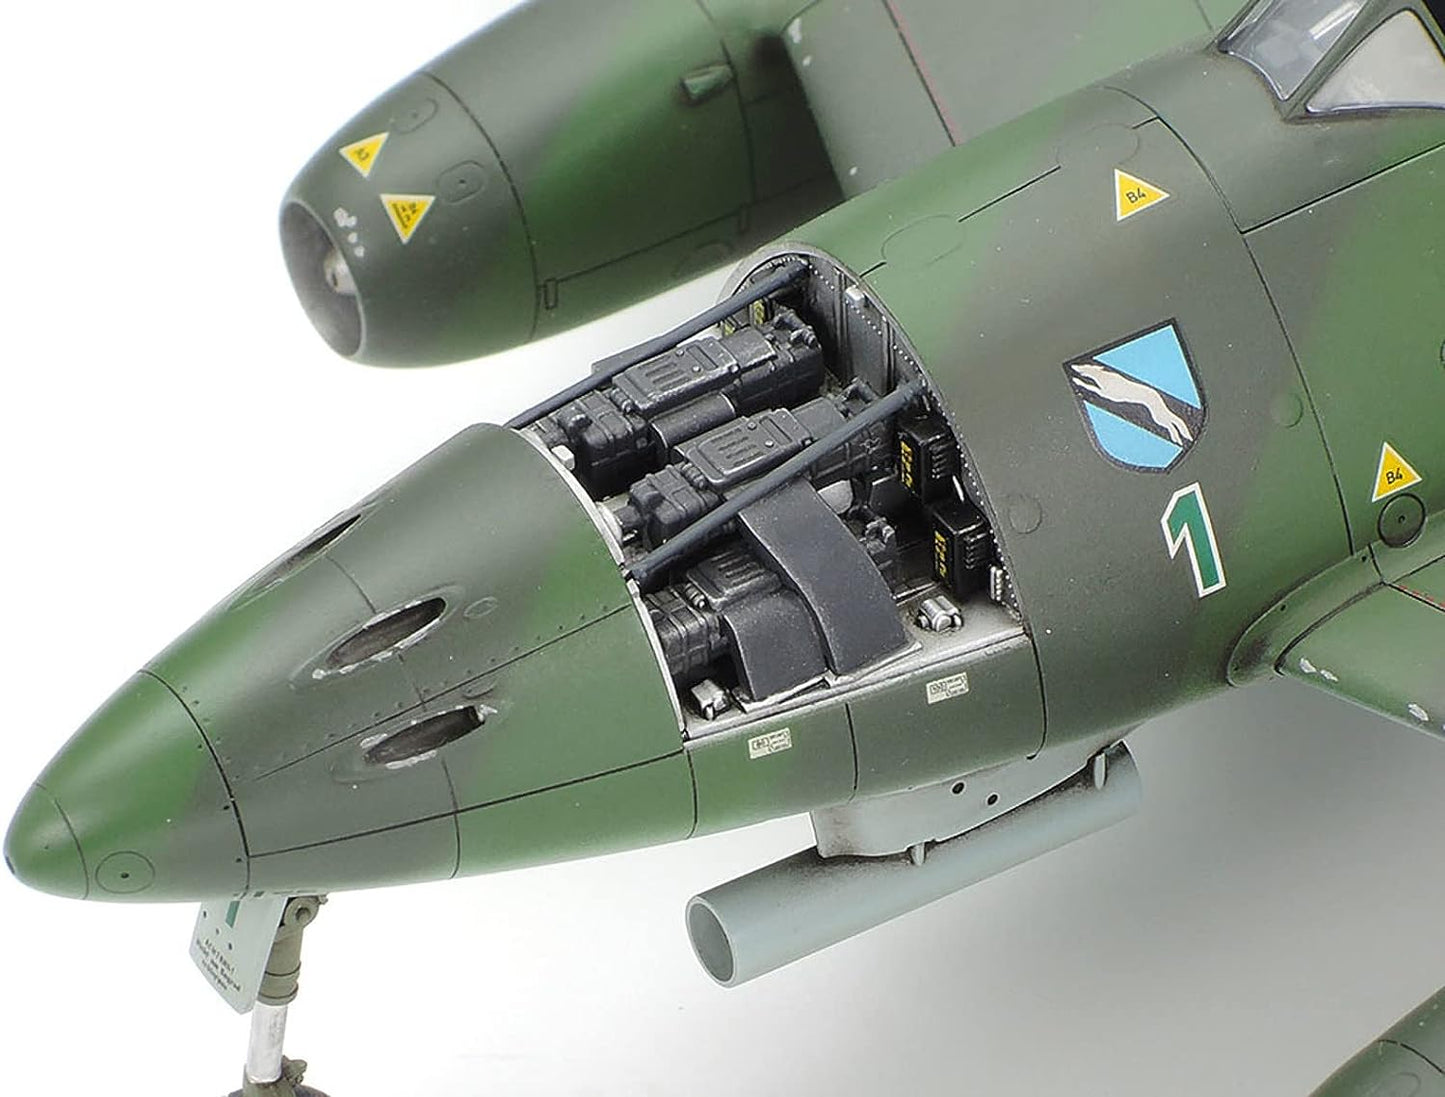 Tamiya 1/48th scale Messerschmitt Me262 A-1A